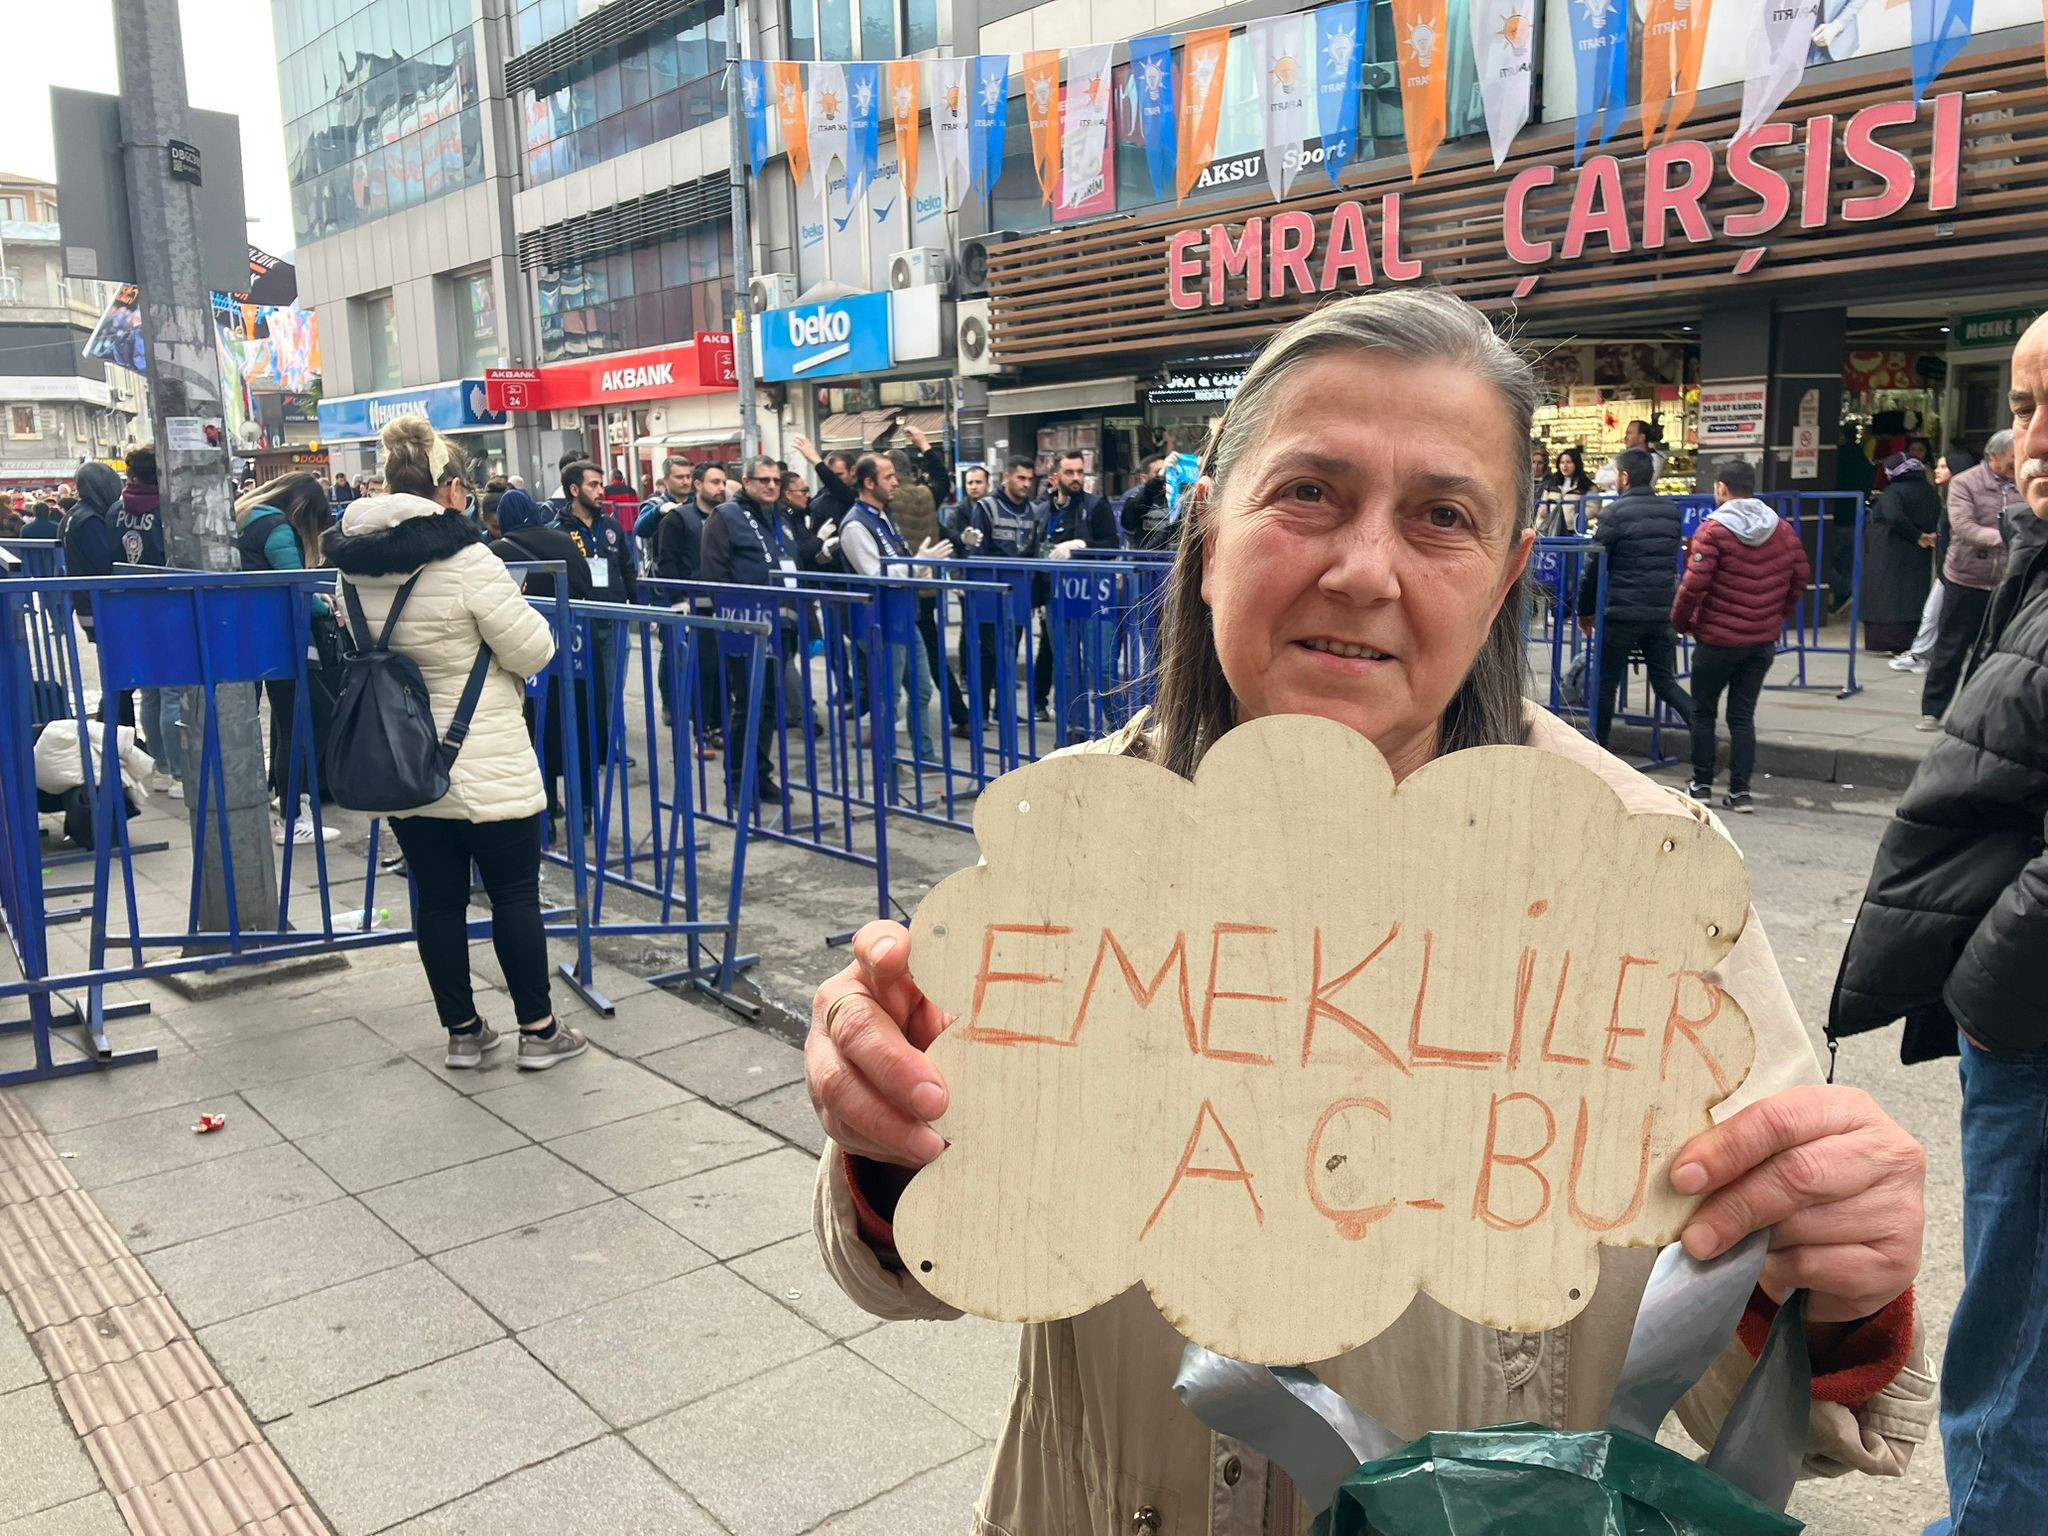 'Emekliler aç' yazısıyla Erdoğan'ın mitingine alınmadı